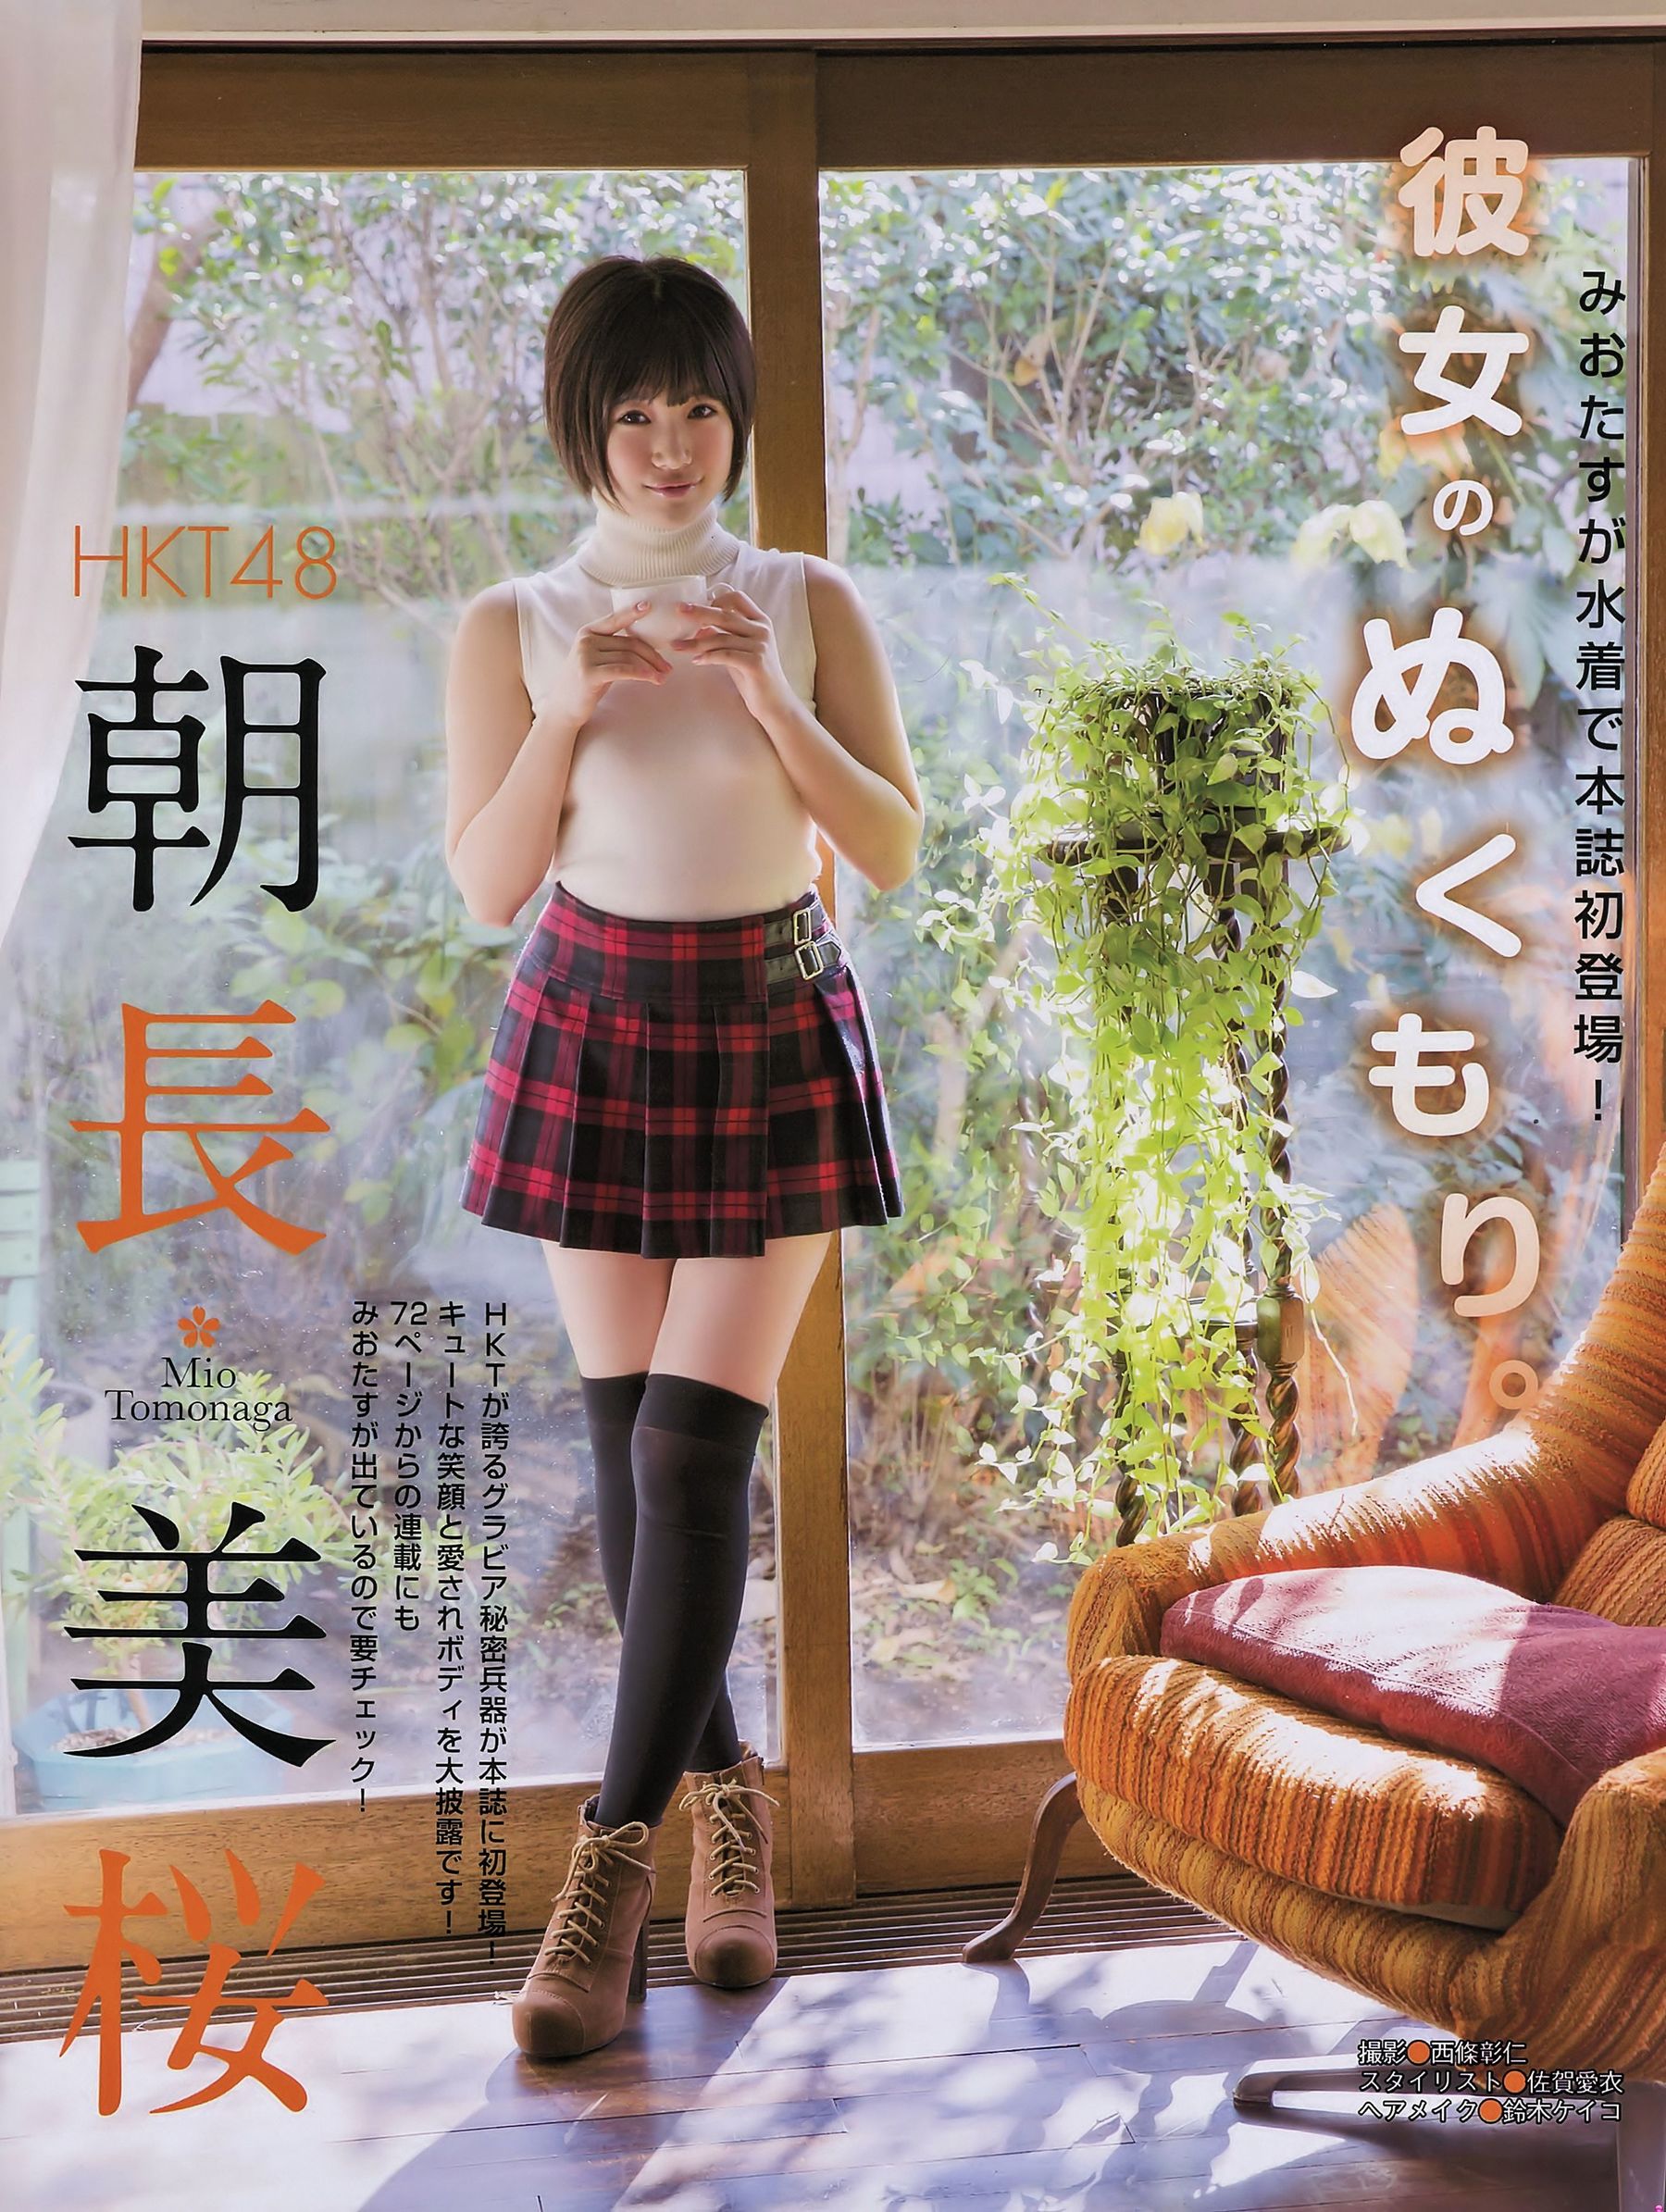 [EX Taishu] Miyuki Watanabe Yuki Kashiwagi Mio Tomonaga 2015 NO.01 & 02 Photograph Page 2 No.3cc2cf